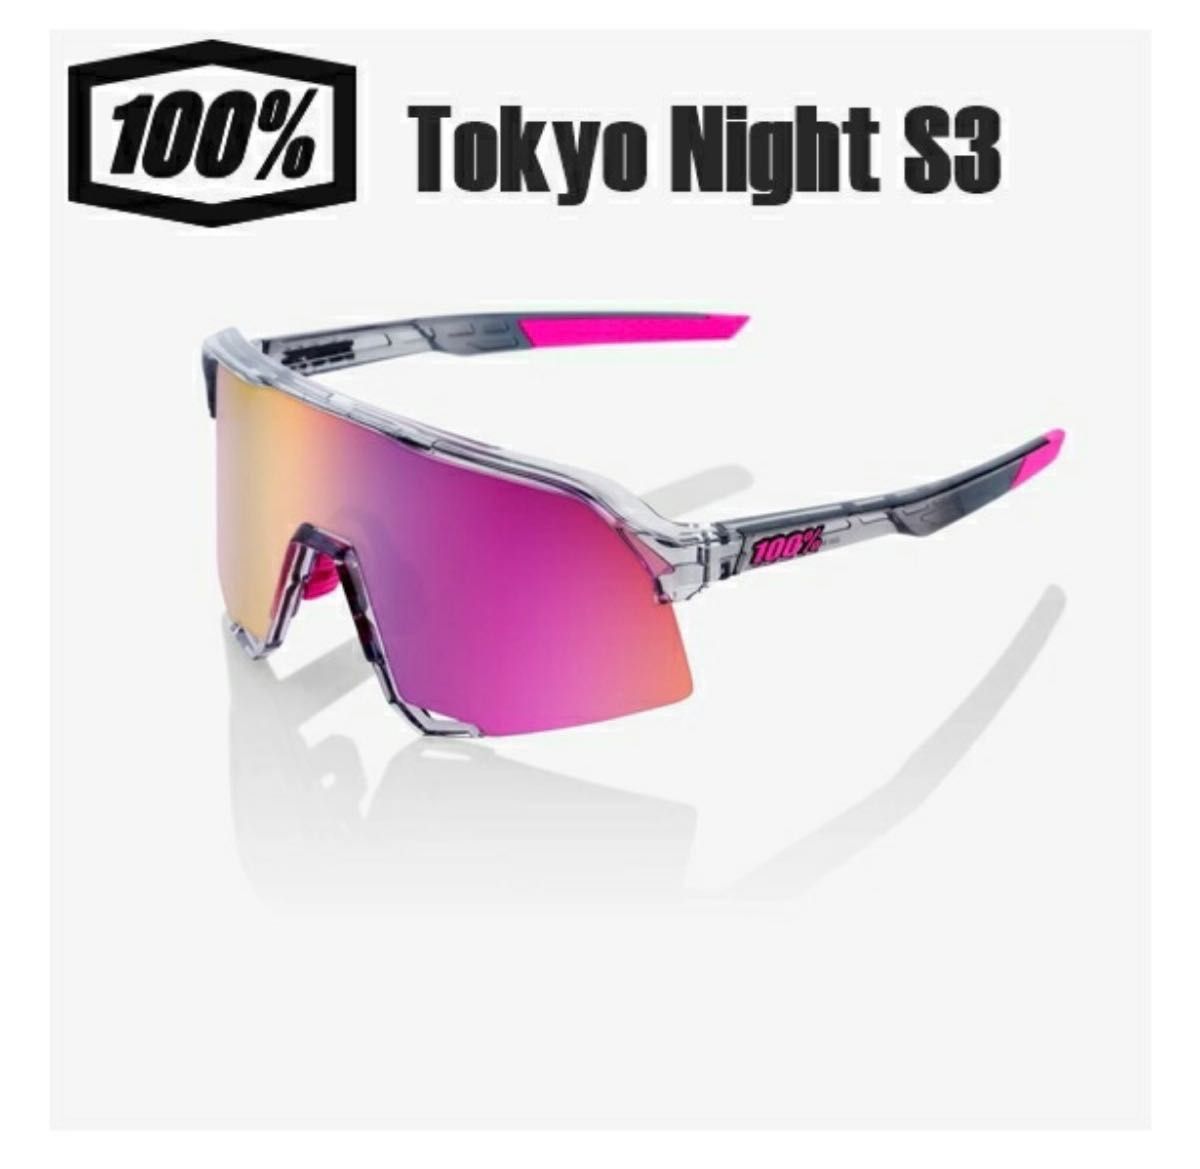 【試着のみ】S3 Tokyo Night 100% サングラス　限定モデル